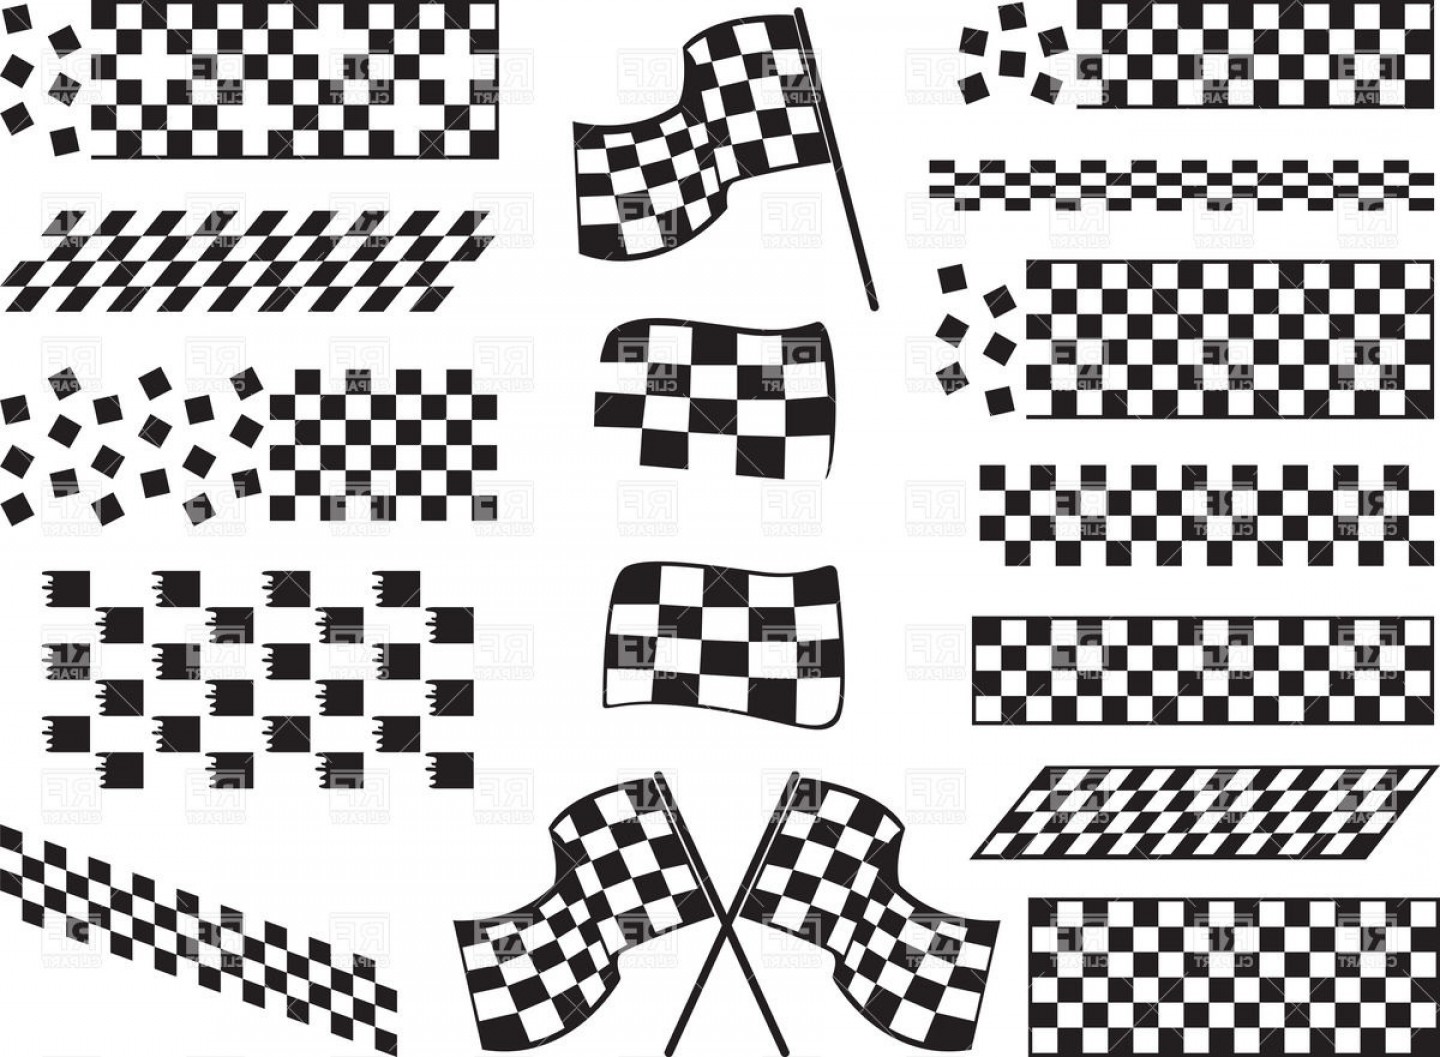 download checkeredflagbmw